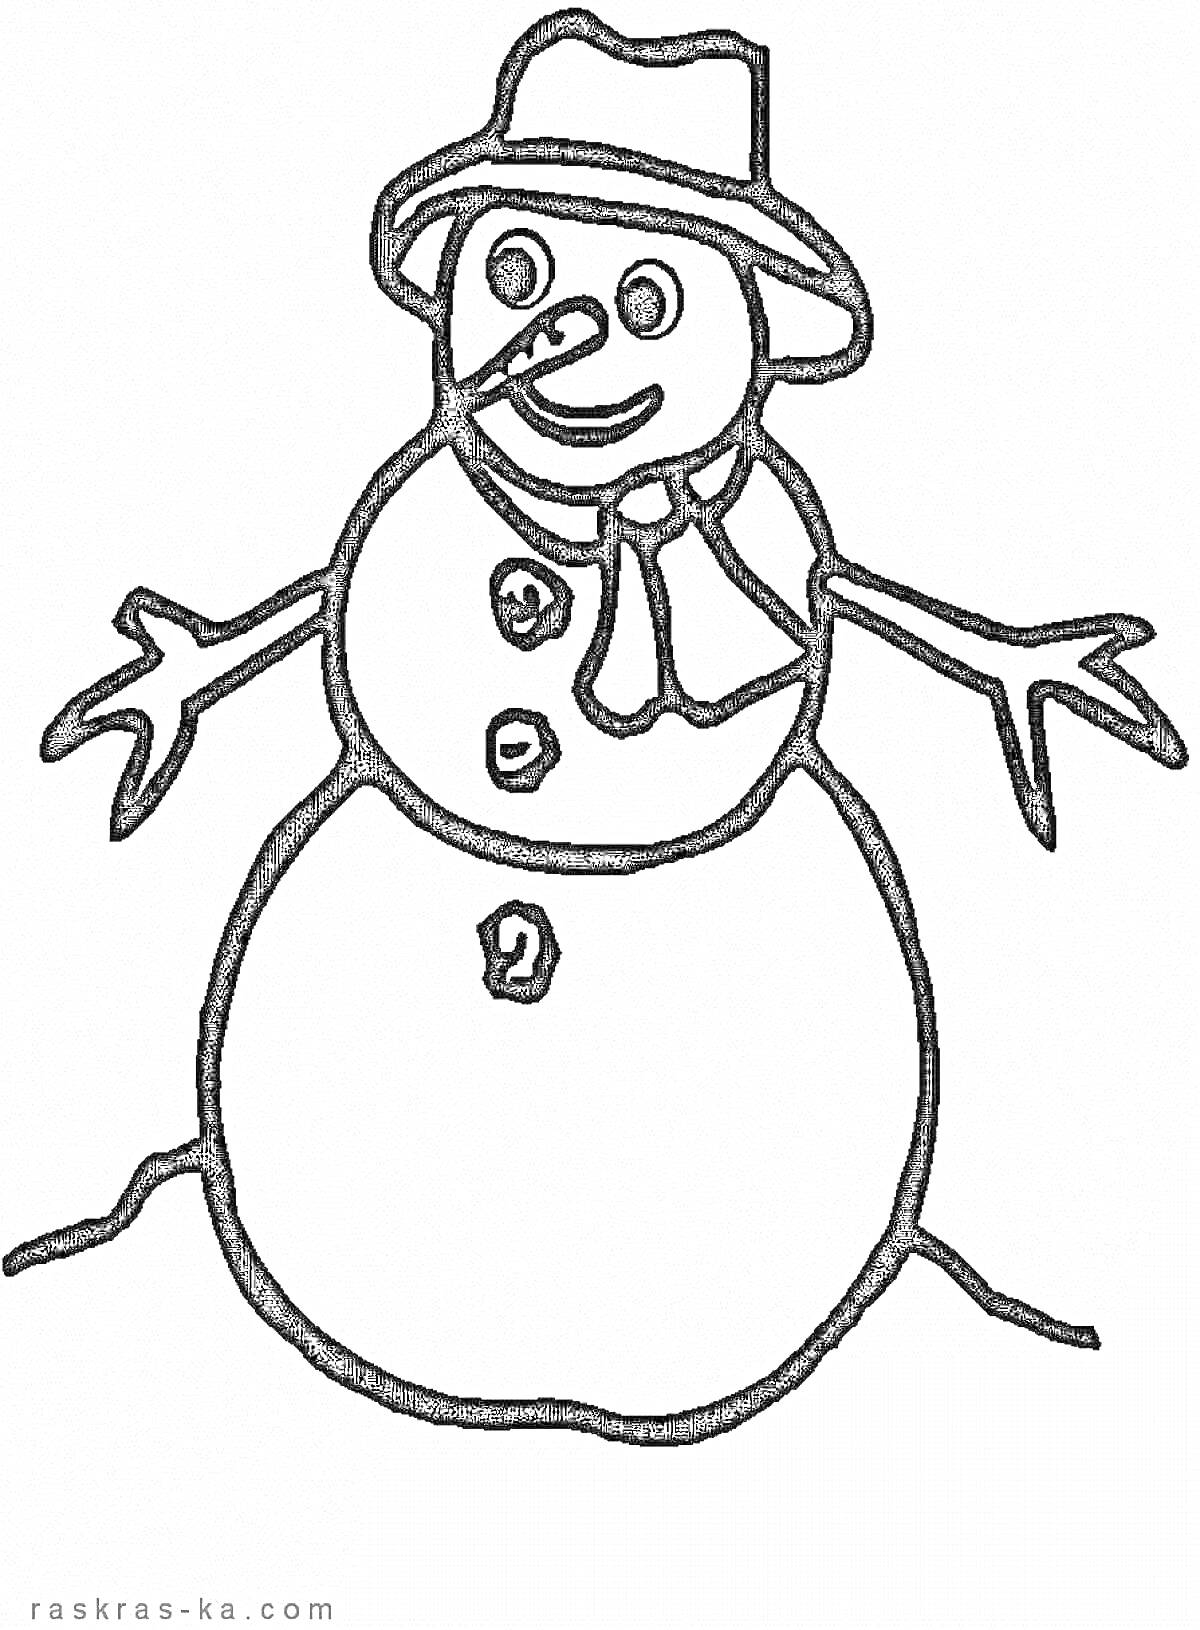 Раскраска снеговик с шляпой и шарфом